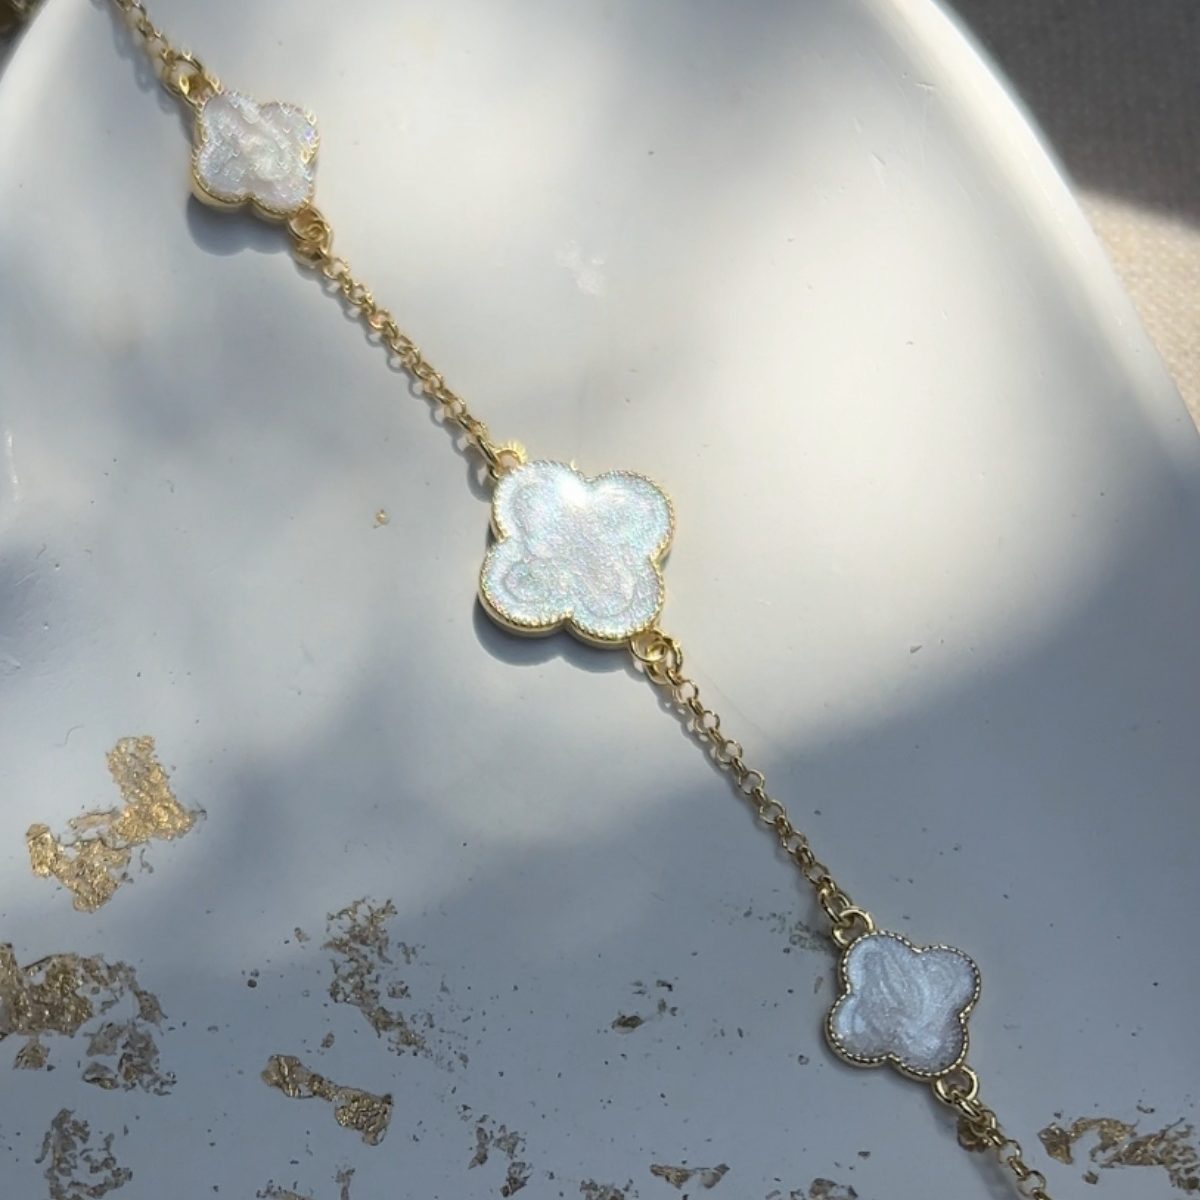 Pozłacana bransoletka z trzema koniczynkami z masą perłową, wykonana ze srebra próby 925 pokrytego 24-karatowym złotem